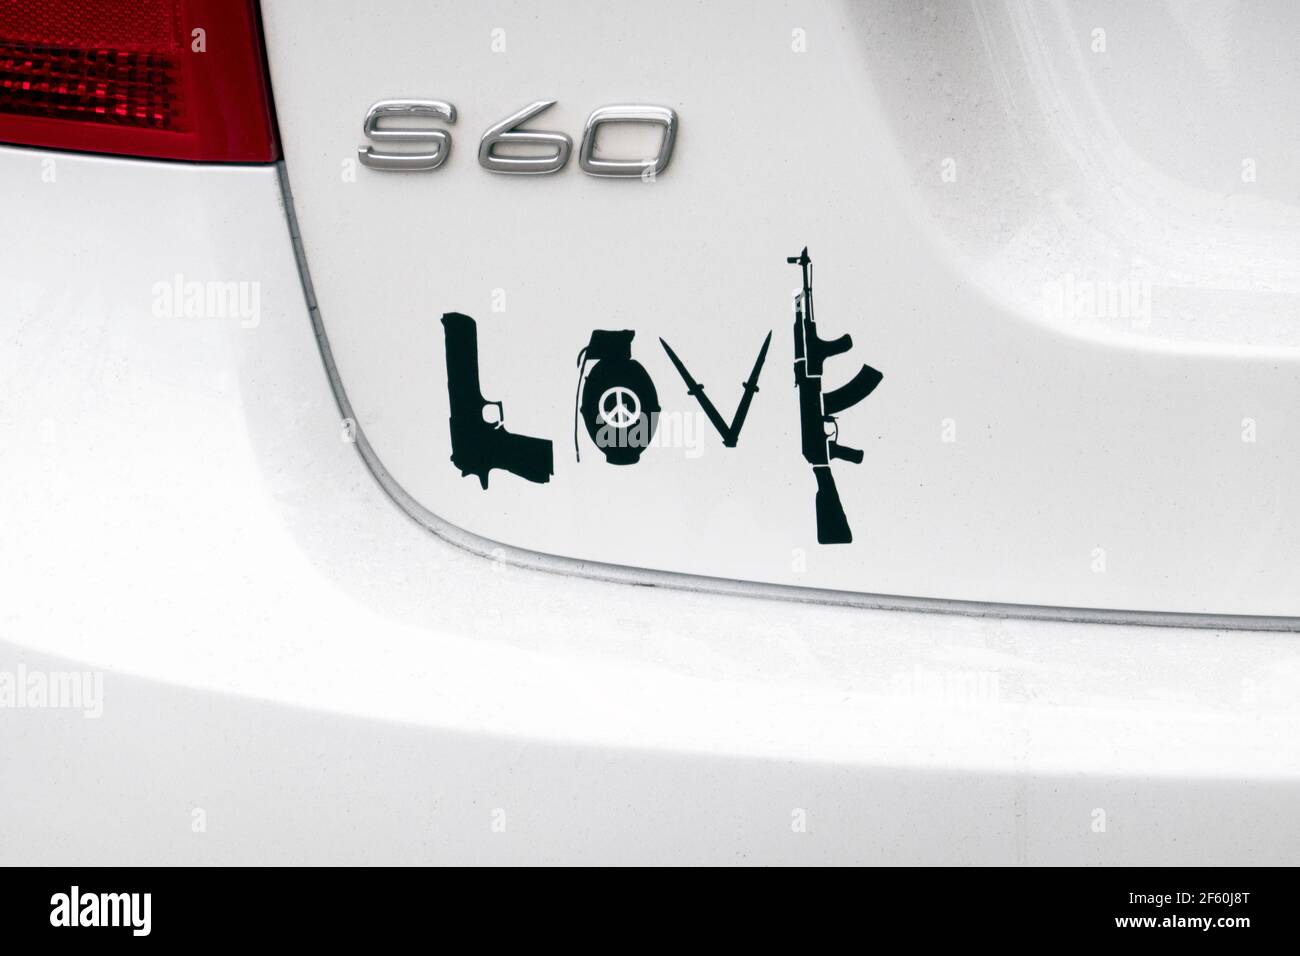 Ein gemischter Aufkleber auf der Rückseite eines geparkten Autos - Liebe, Frieden, Waffen, Granaten und Sturmgewehre. In Flushing, Queens, New York City. Stockfoto